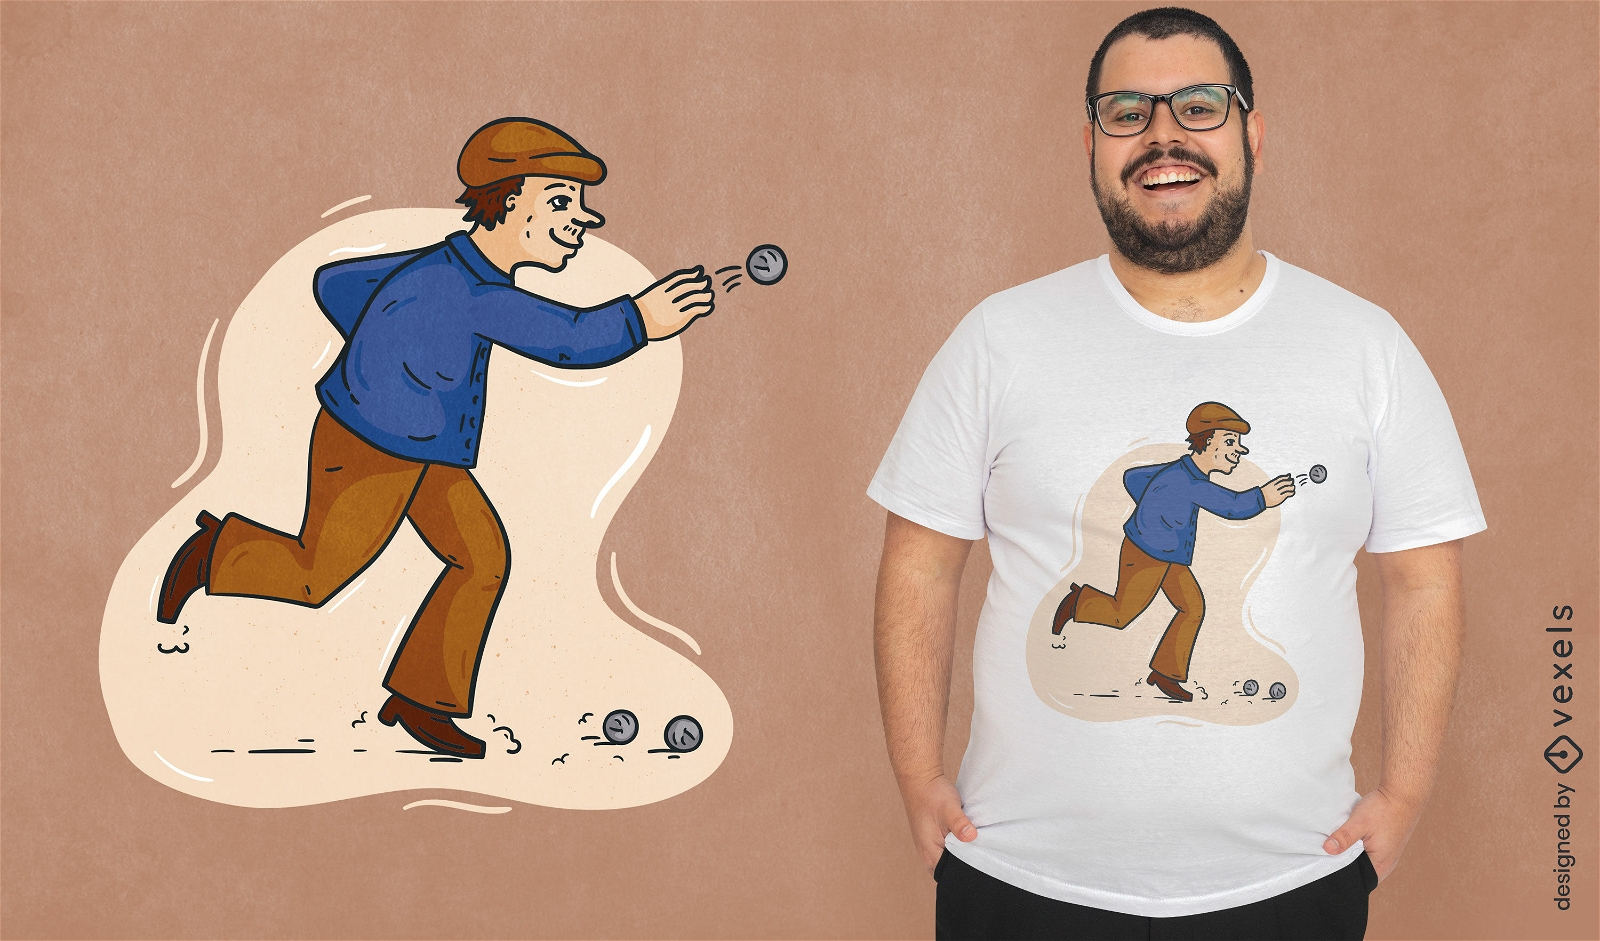 Personaje de hombre jugando diseño de camiseta de petanca.